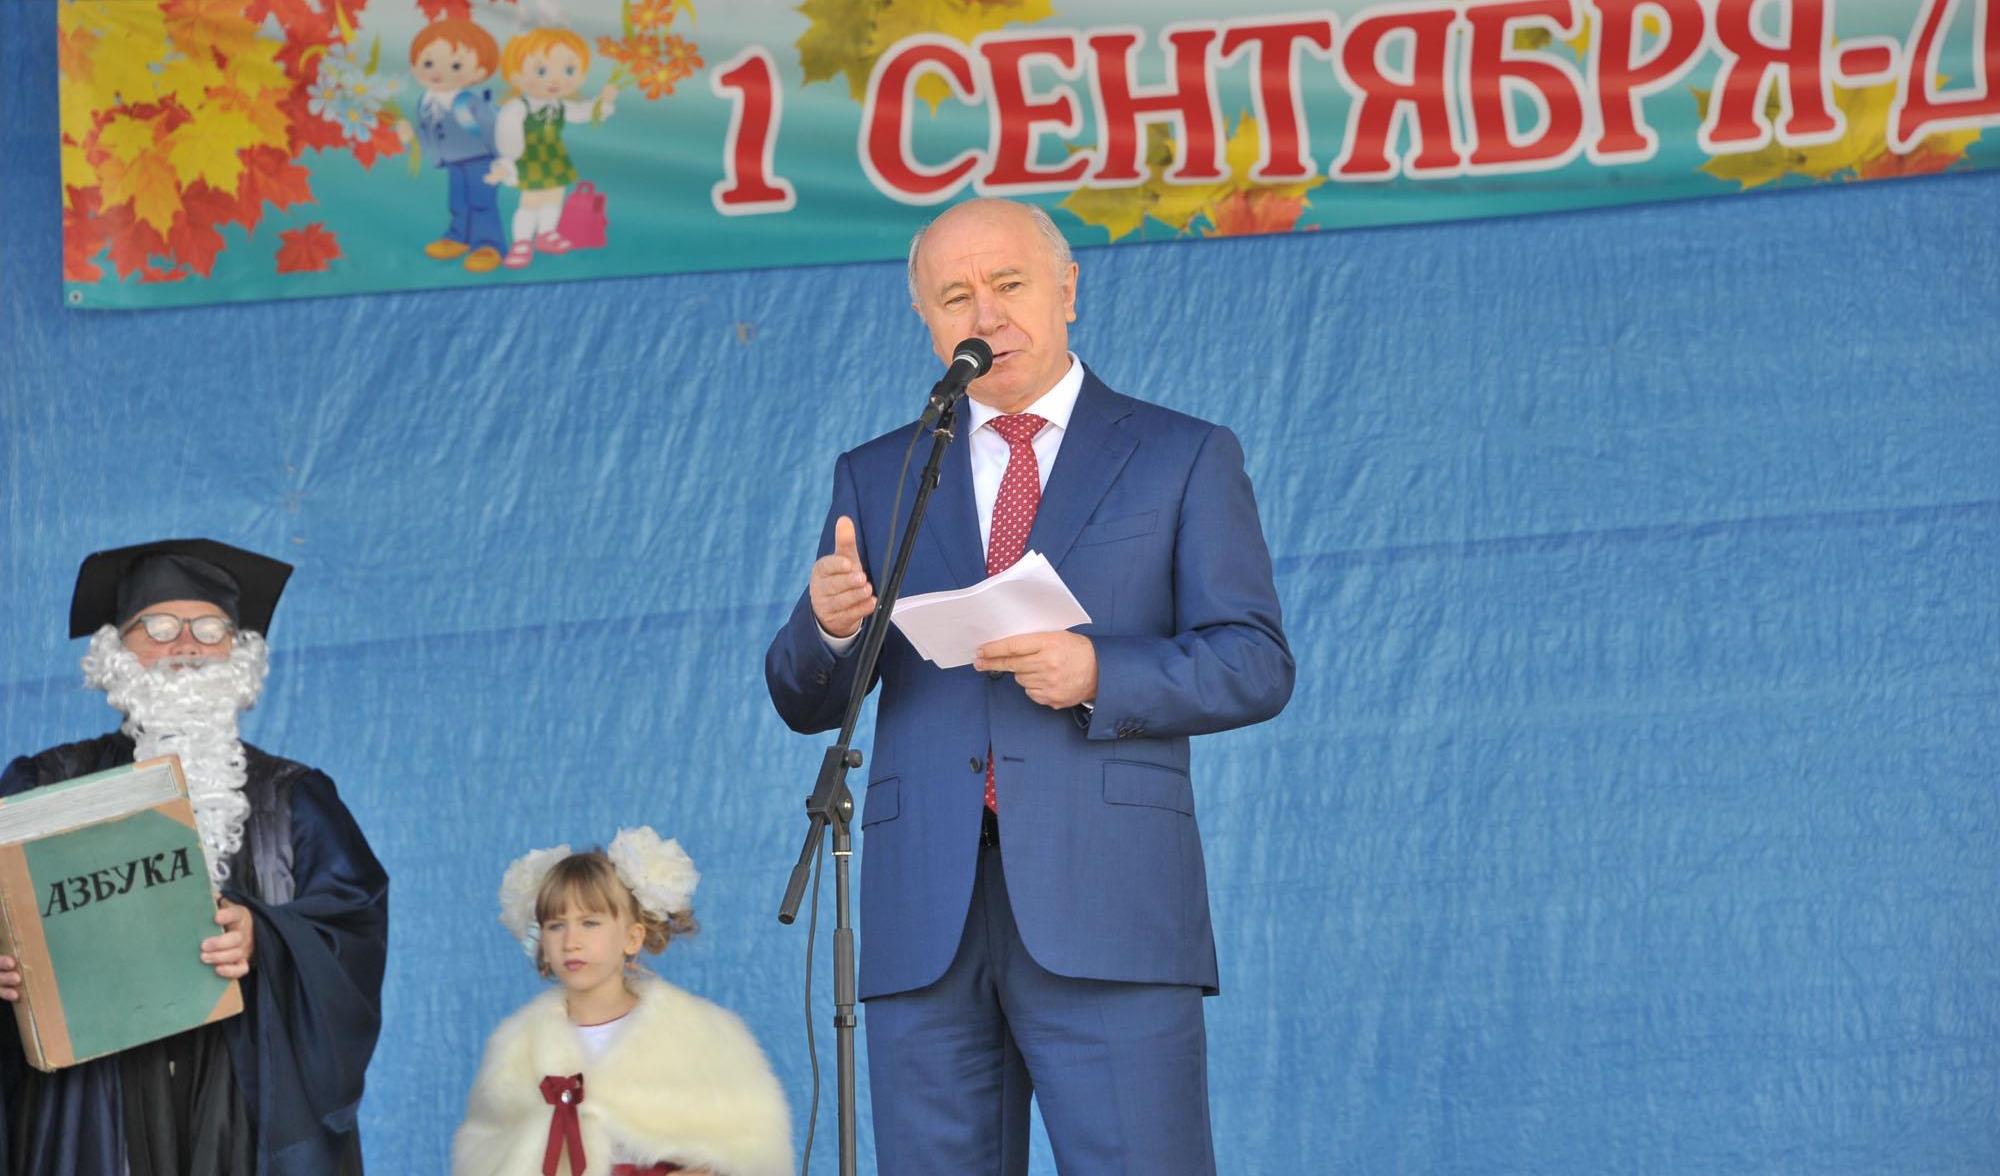 Н.И.Меркушкин: «Именно образование служит основой для реализации наших планов по развитию Самарской области, строительству сильной, независимой, процветающей страны — великой России»